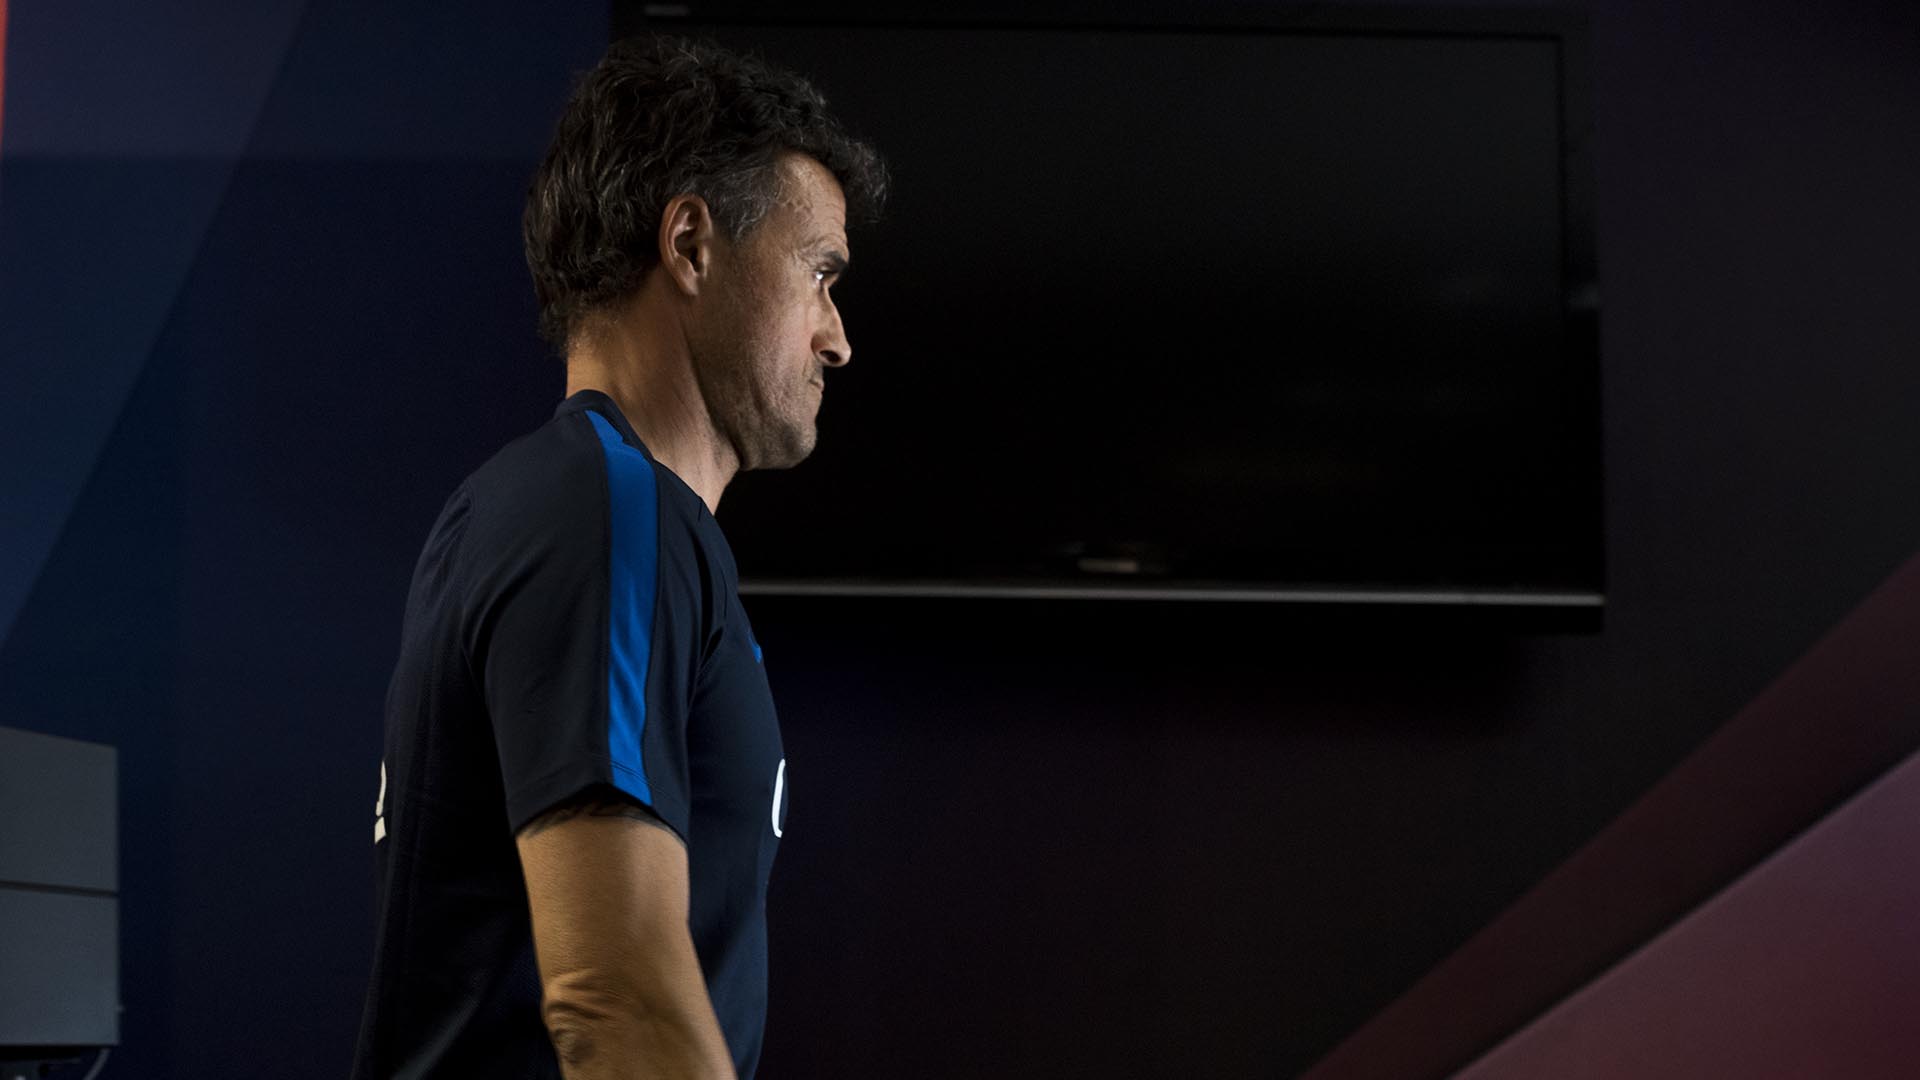 Luis Enrique esperó al final de la rueda de prensa del partido contra el Sporting (6-1) para anunciar: “Aprovecho para acabar la rueda de prensa de una manera diferente. Os anuncio a todos que no seré entrenador del Barcelona la próxima temporada”.